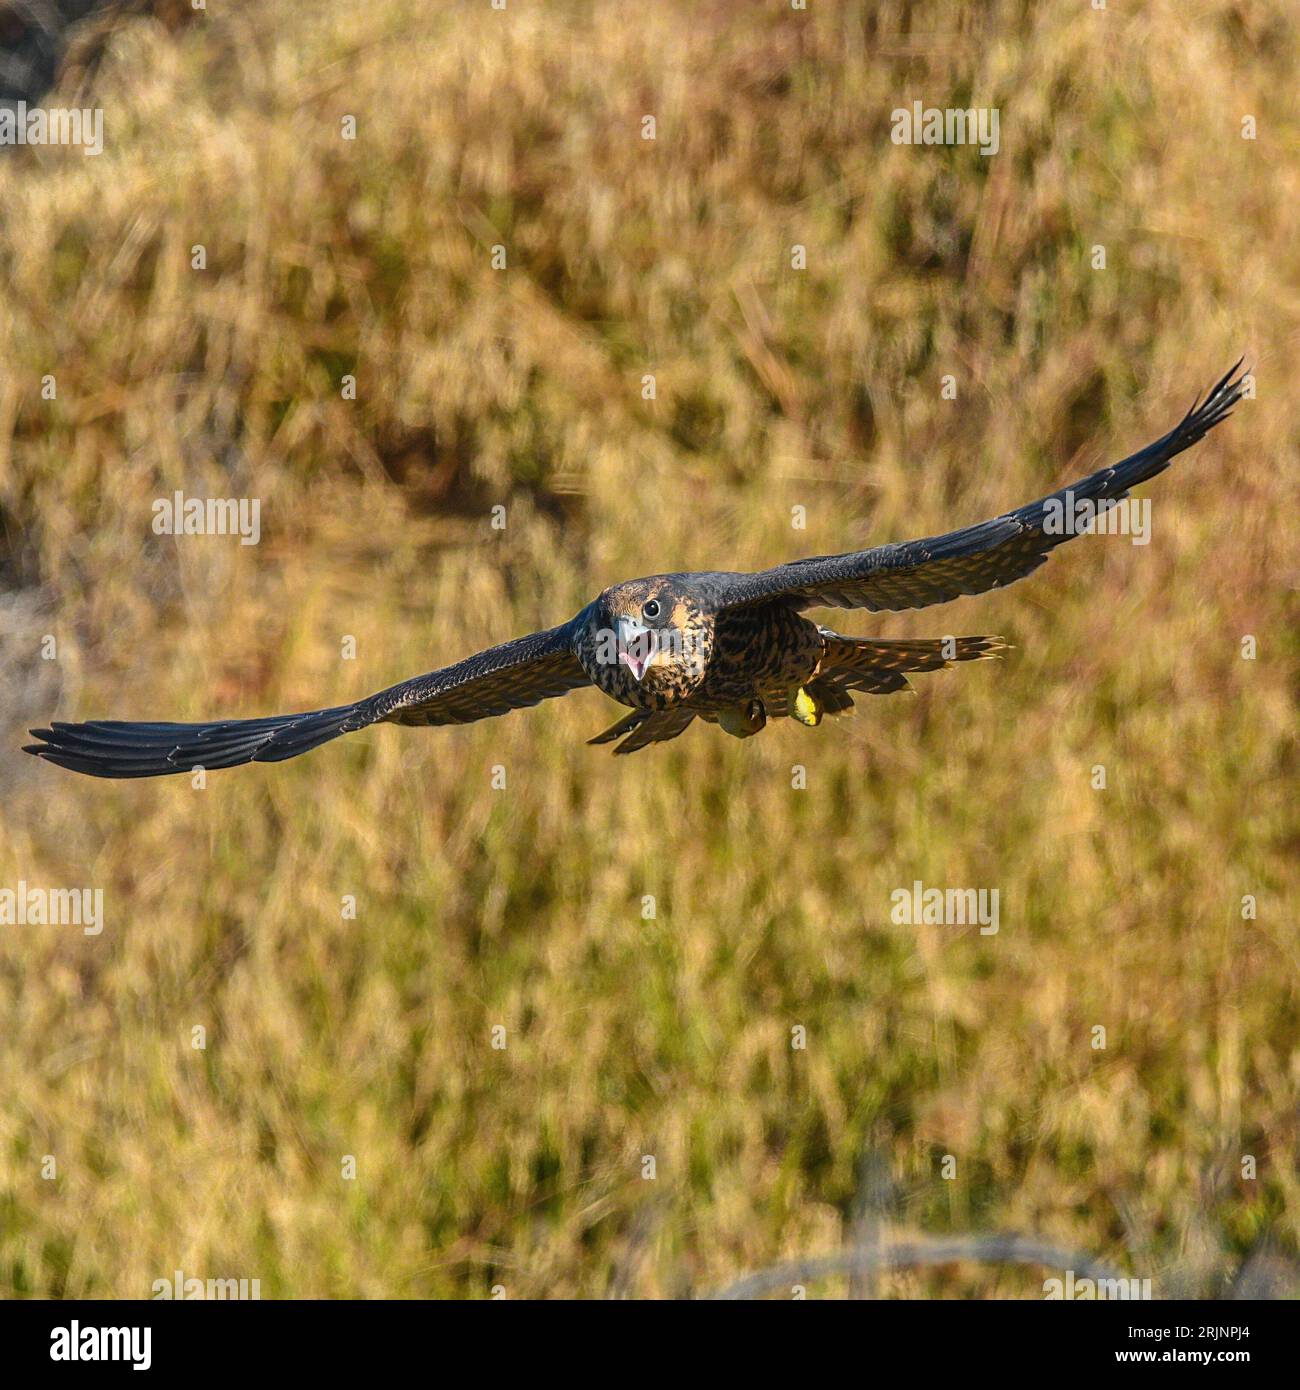 Un majestuoso halcón altai volando por el aire, con el telón de fondo de un exuberante campo verde Foto de stock